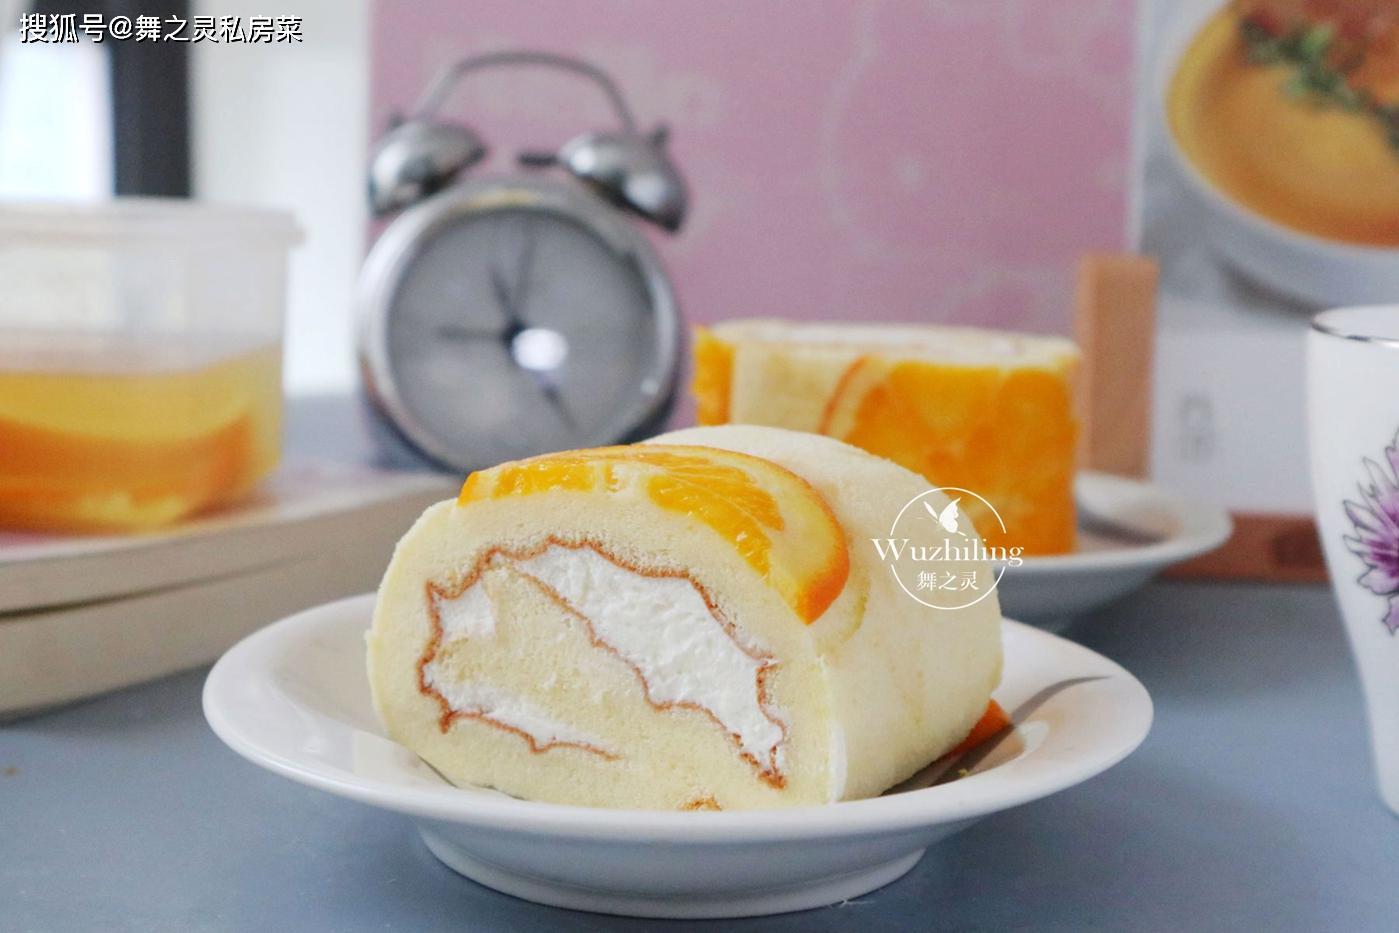 没烤箱就不能做蛋糕吗？一个蒸锅就能做出漂亮好吃的橙子蛋糕#蛋糕#蒸蛋糕 - 哔哩哔哩